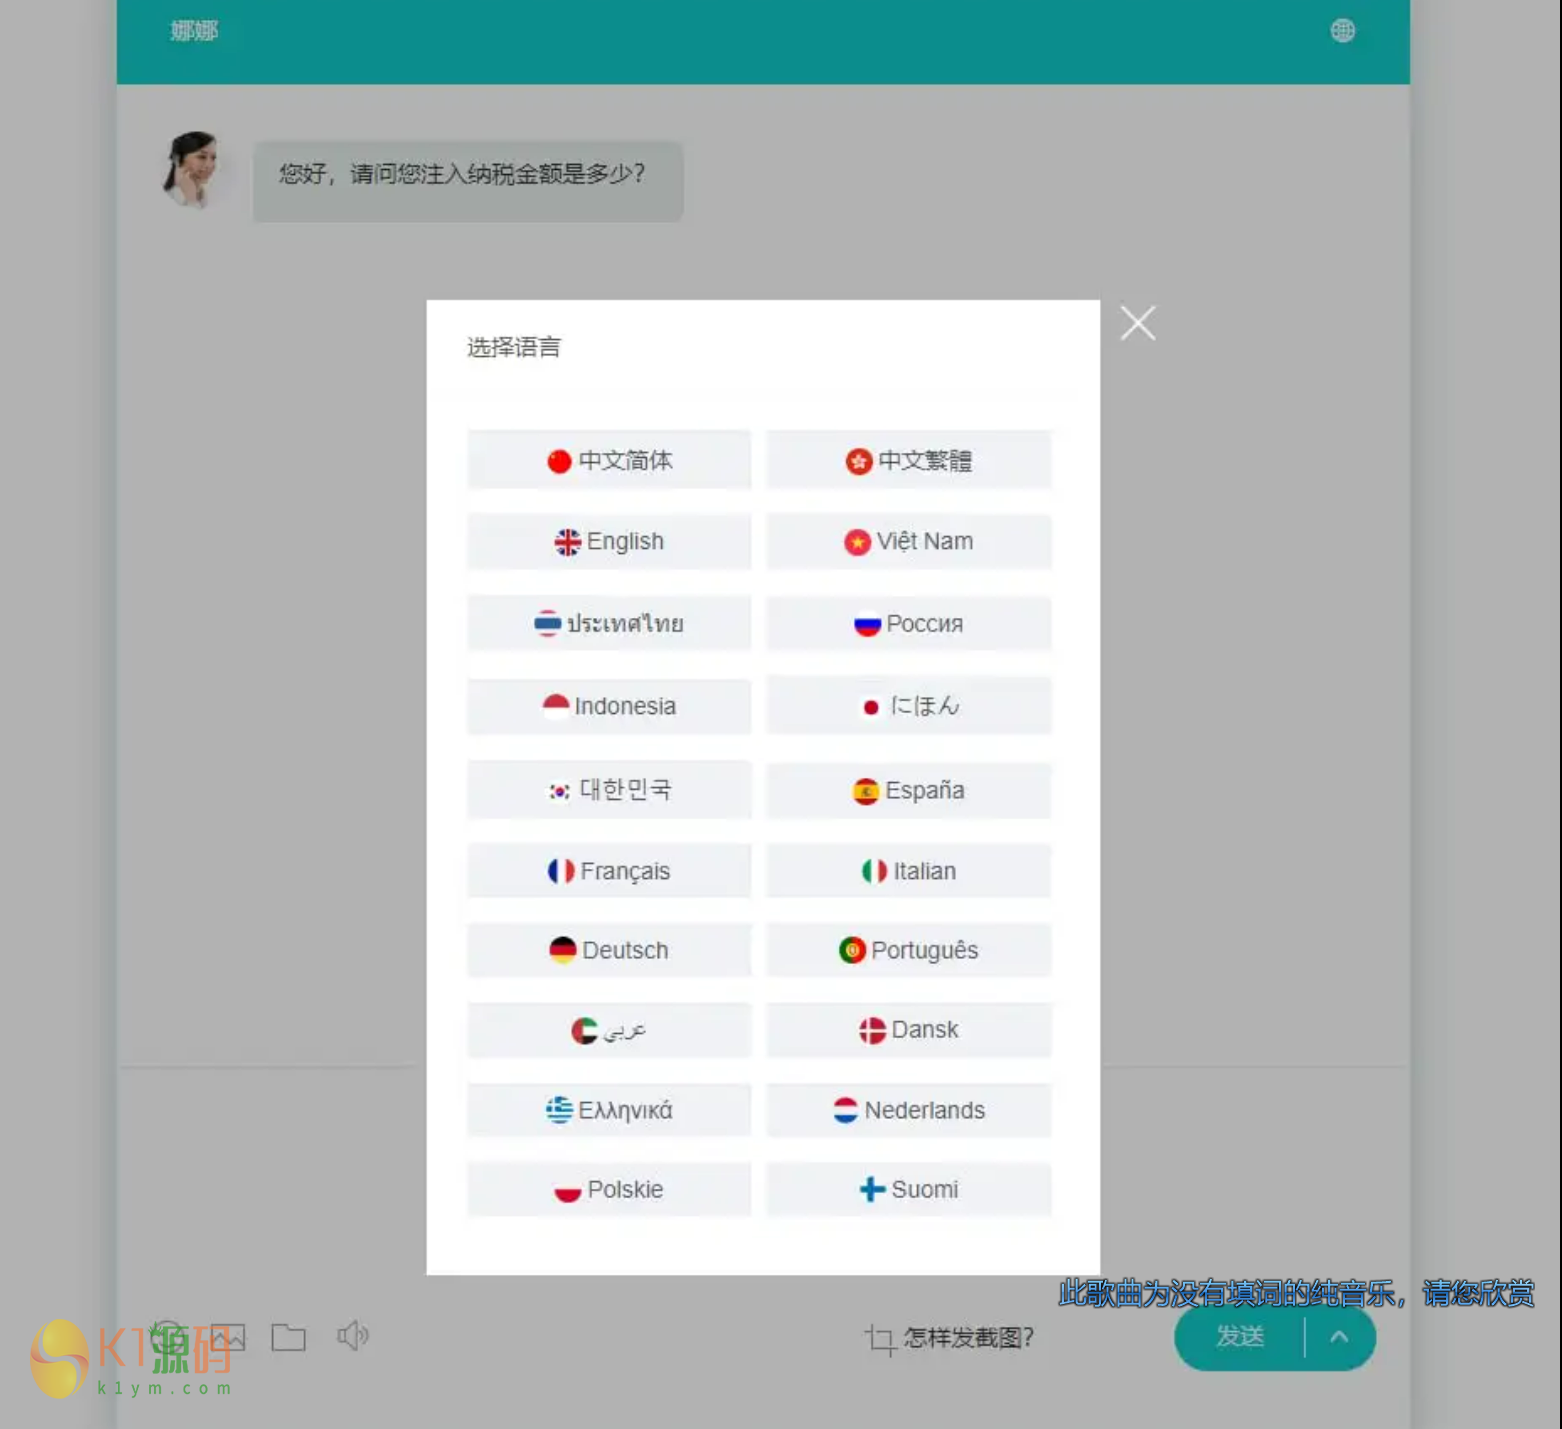 20国语言在线客服系统/AI智能客服插图